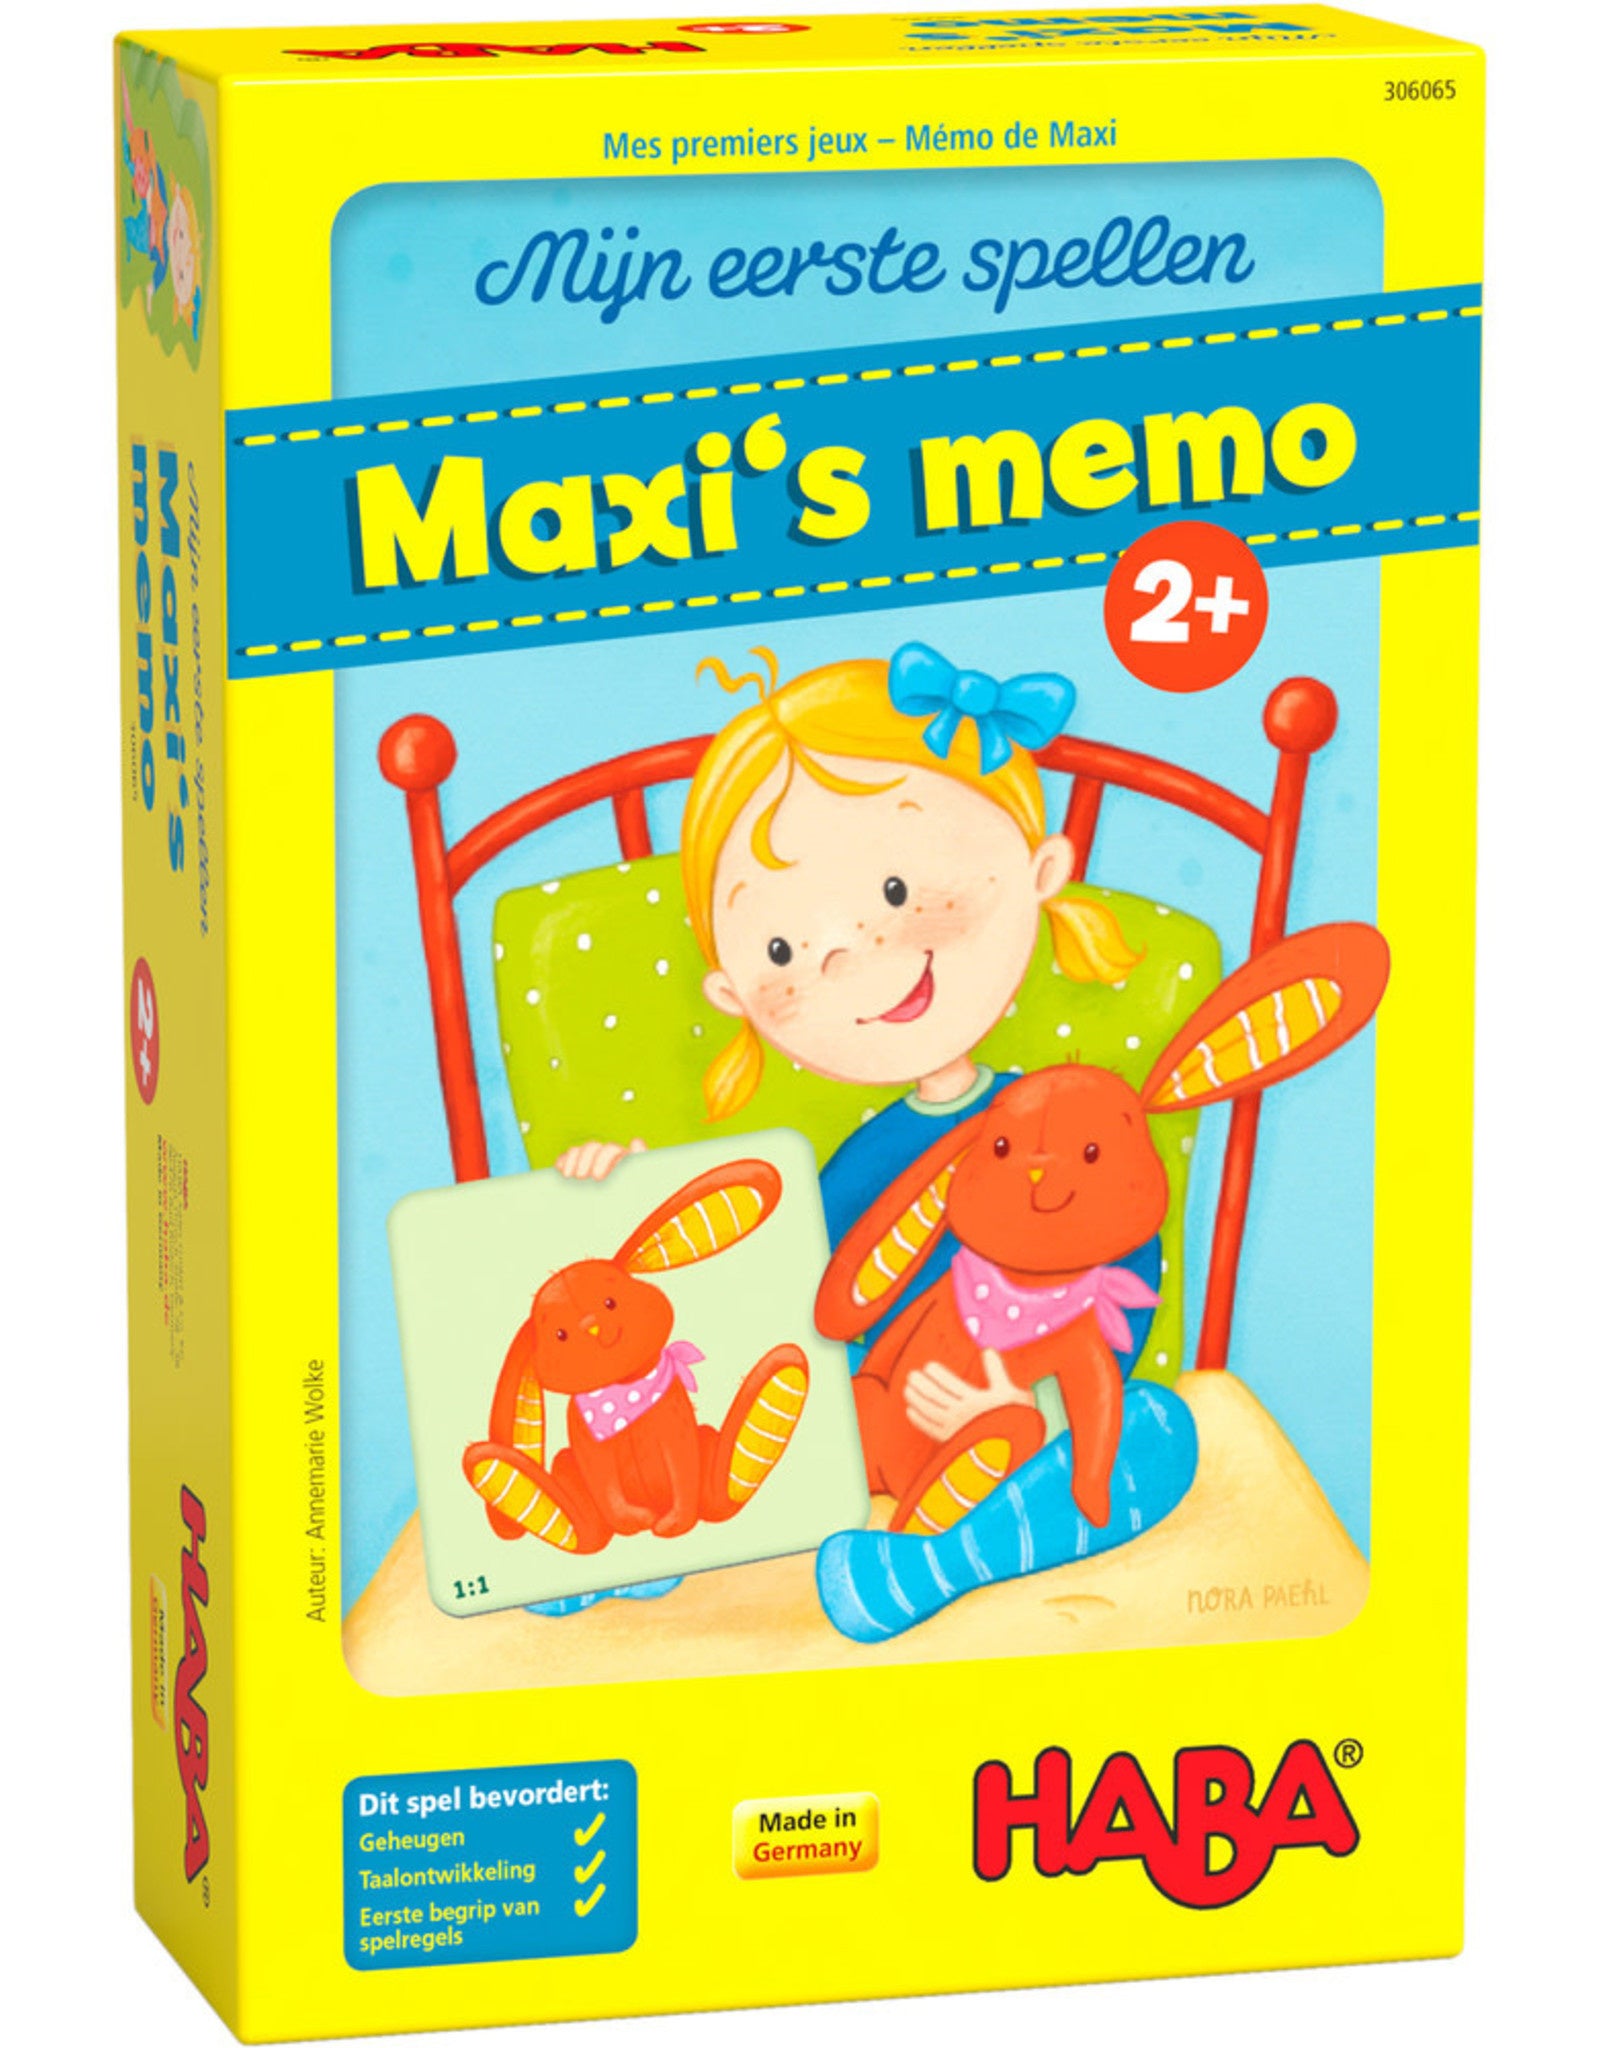 haba-eerste-spel-maxis-memo